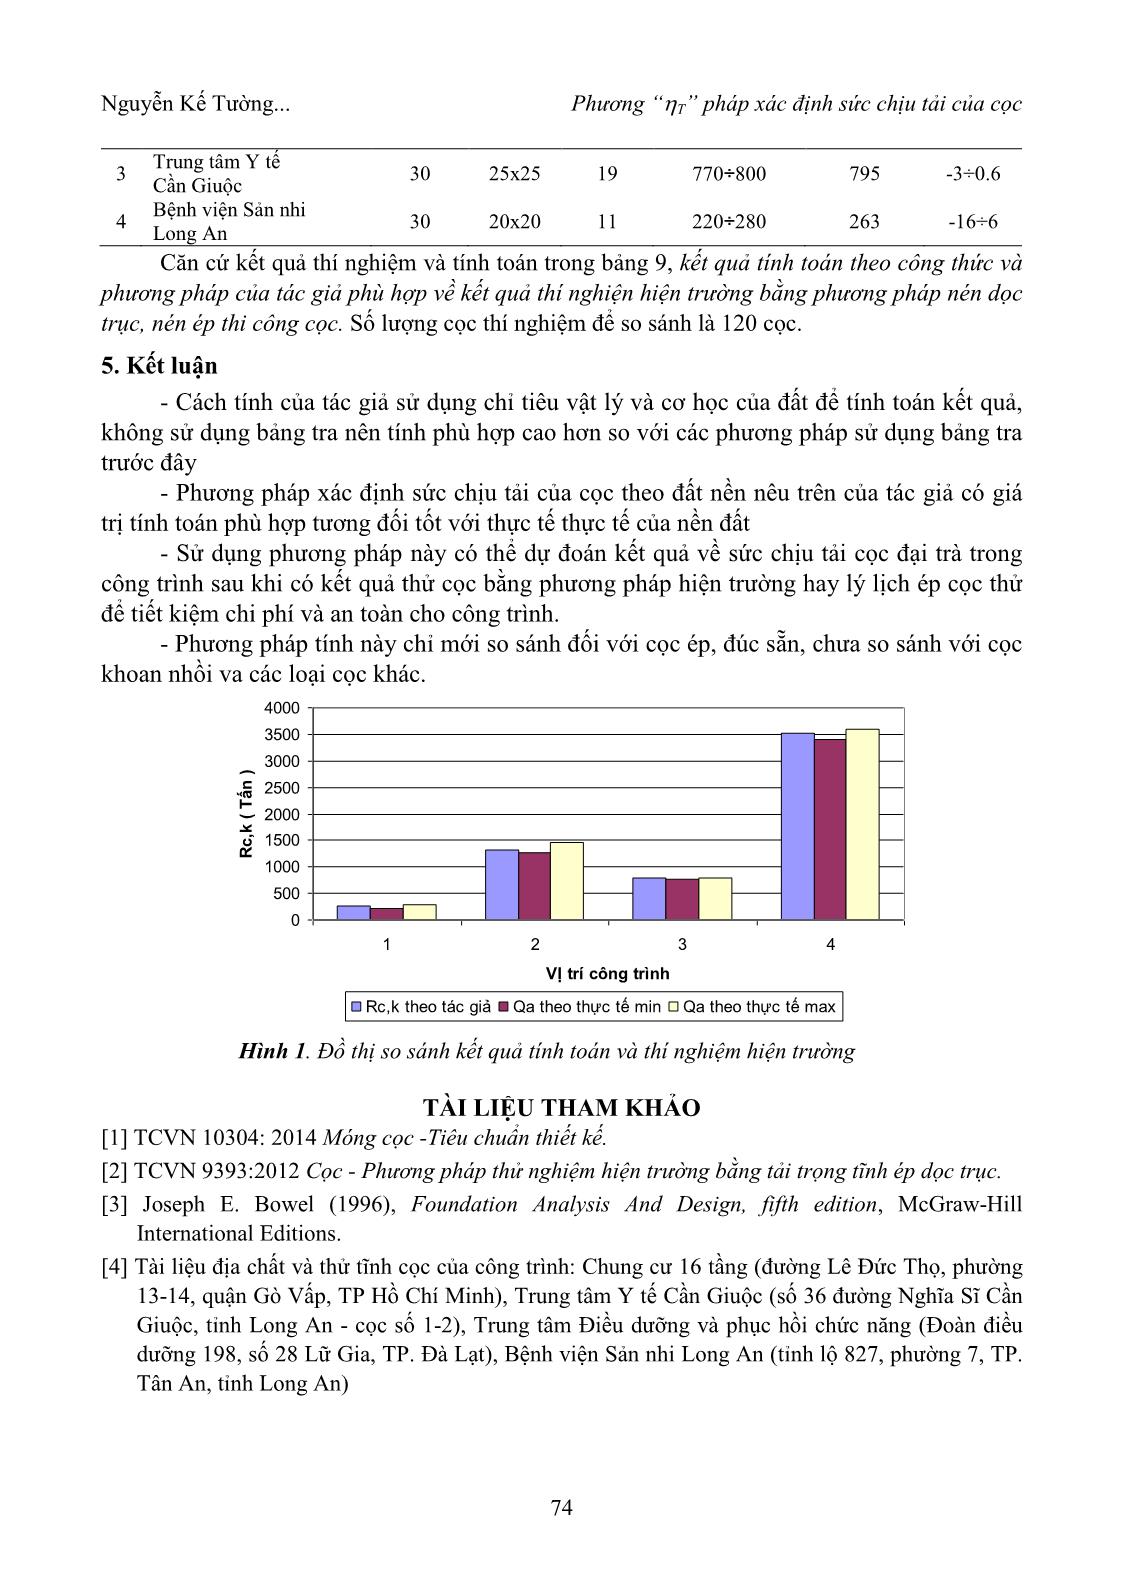 Phương pháp “T” xác định sức chịu tải của cọc trang 5